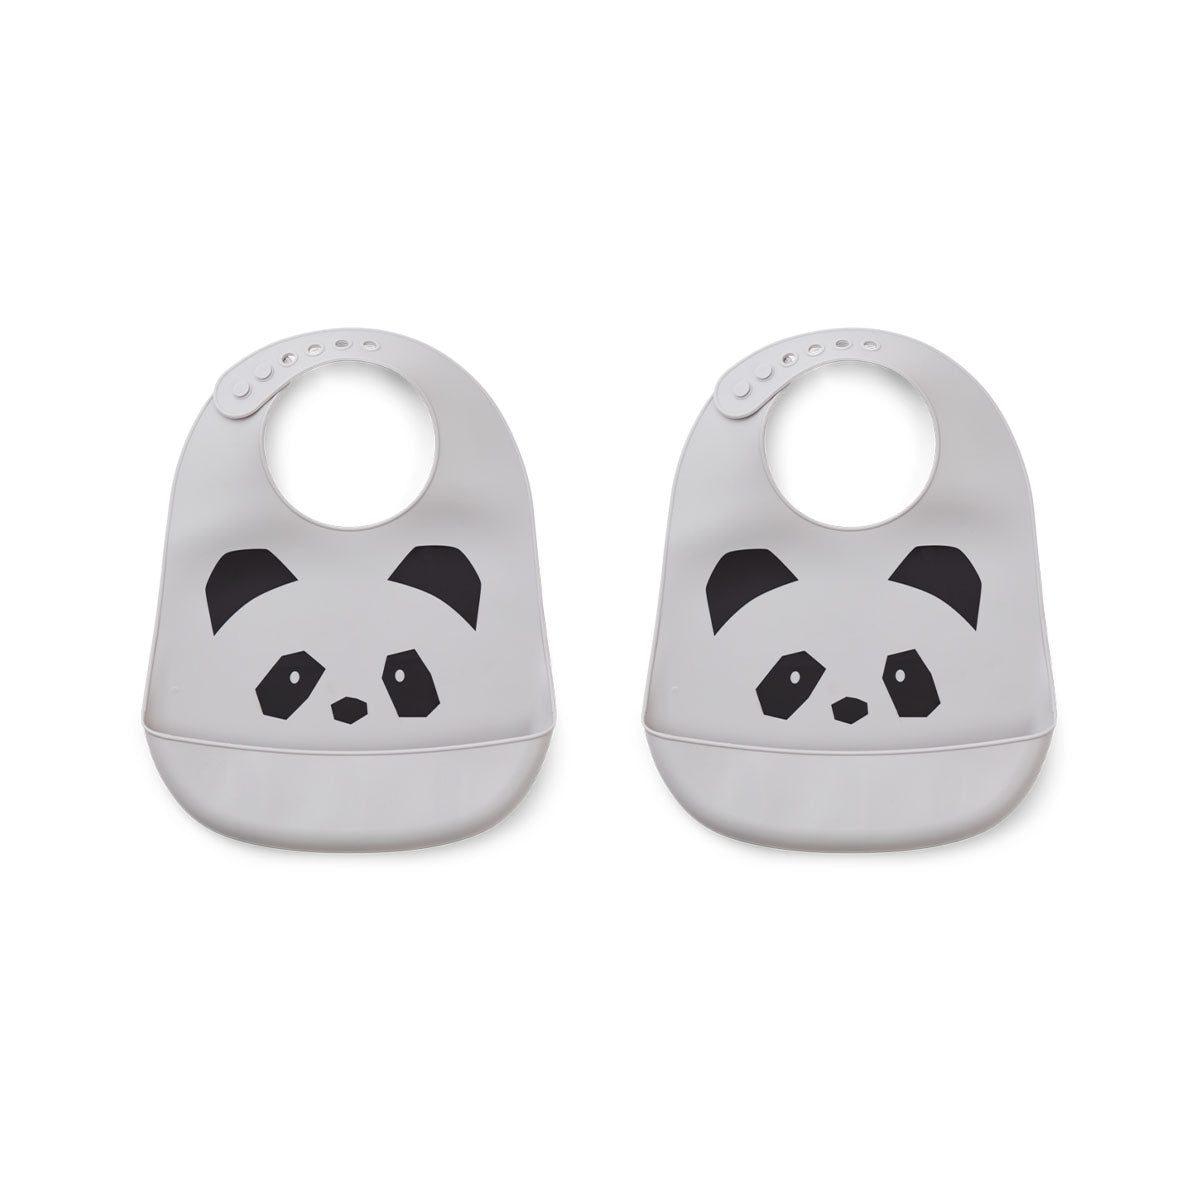 De tilda 2-pack silicone slab in de variant panda dumbo grey van Liewood houdt de kleding van je kindje schoon. De siliconen slabbetjes hebben een handige opvangbak en zijn in maat verstelbaar. VanZus